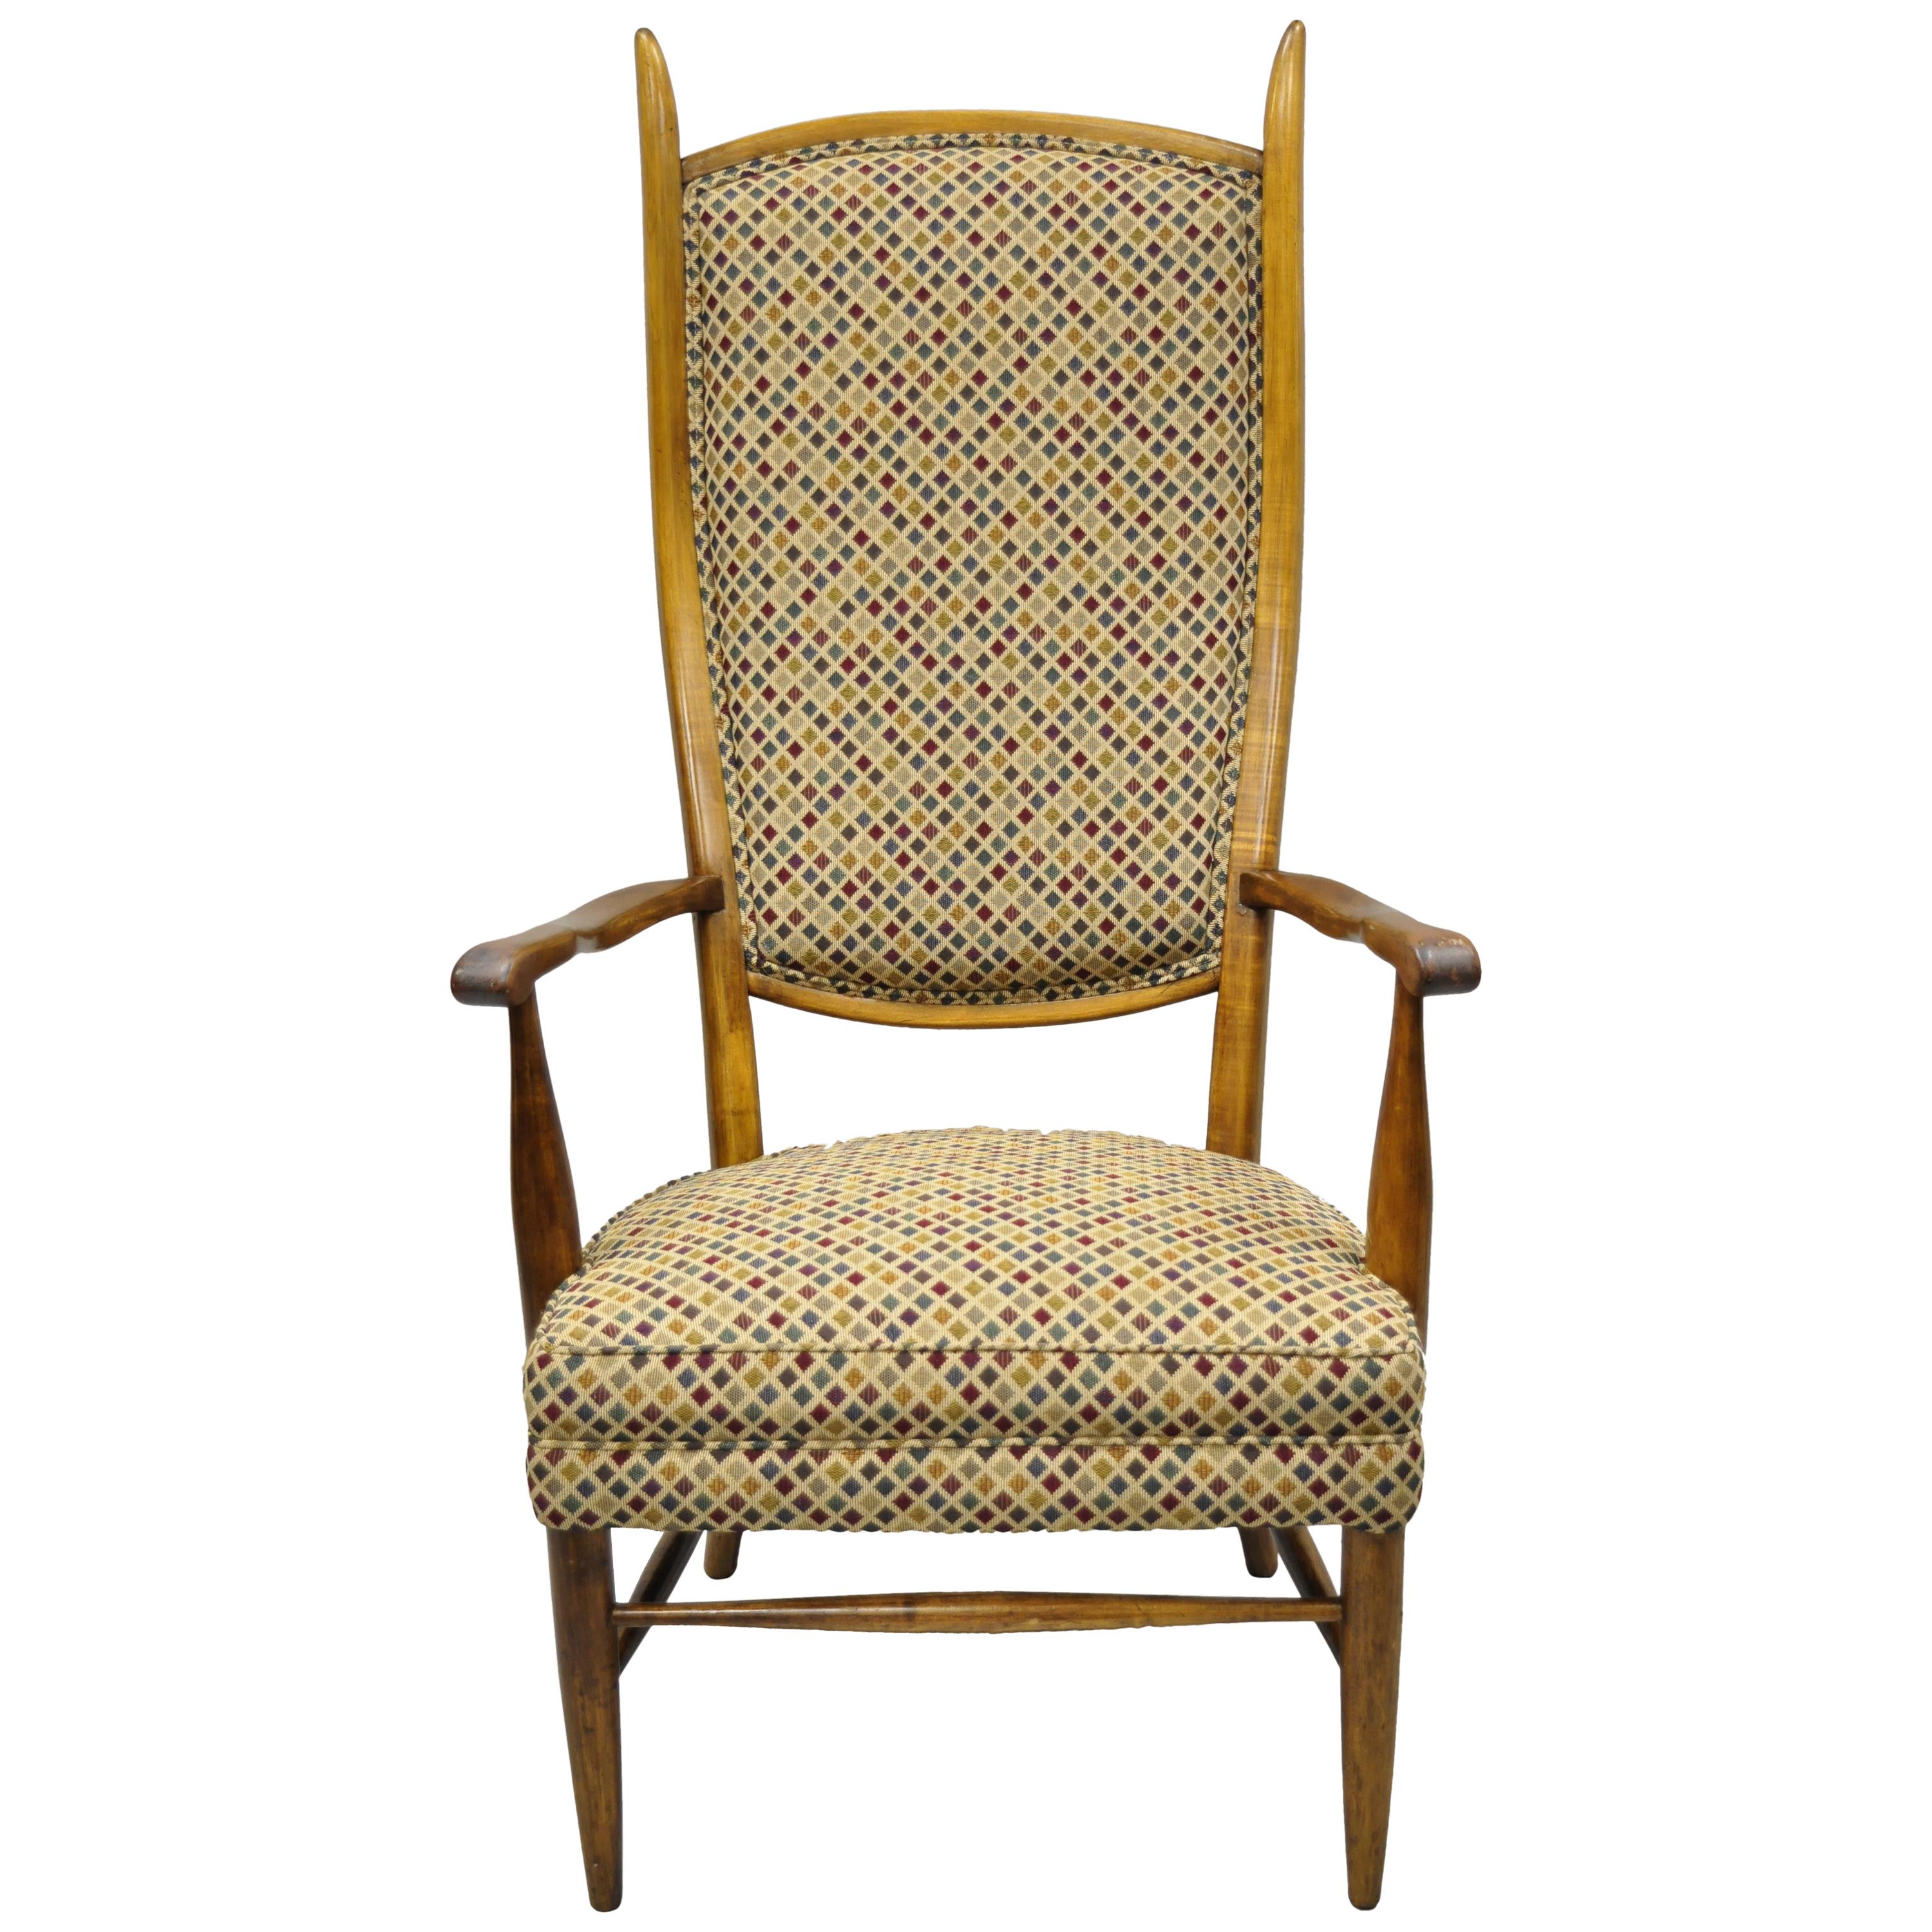 Vintage-Sessel aus Ahorn mit hoher Rückenlehne, Edward Wormley zugeschrieben, Mid-Century Modern